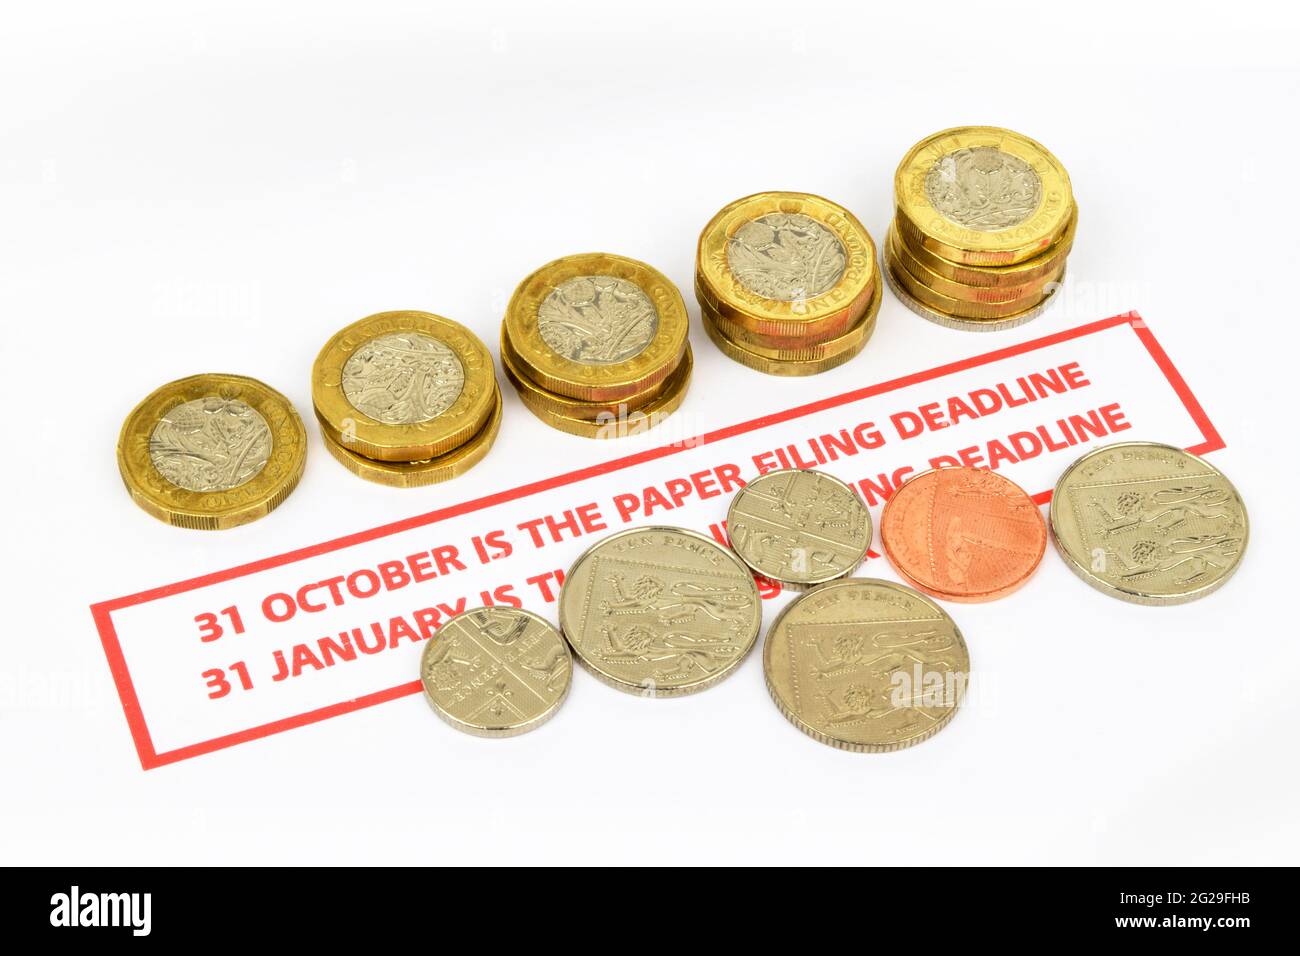 Rappel de la date limite de production du papier pour les déclarations fiscales au Royaume-Uni Une vie fixe comprenant un rappel d'échéance en rouge, des pièces de monnaie et un stylo. Banque D'Images